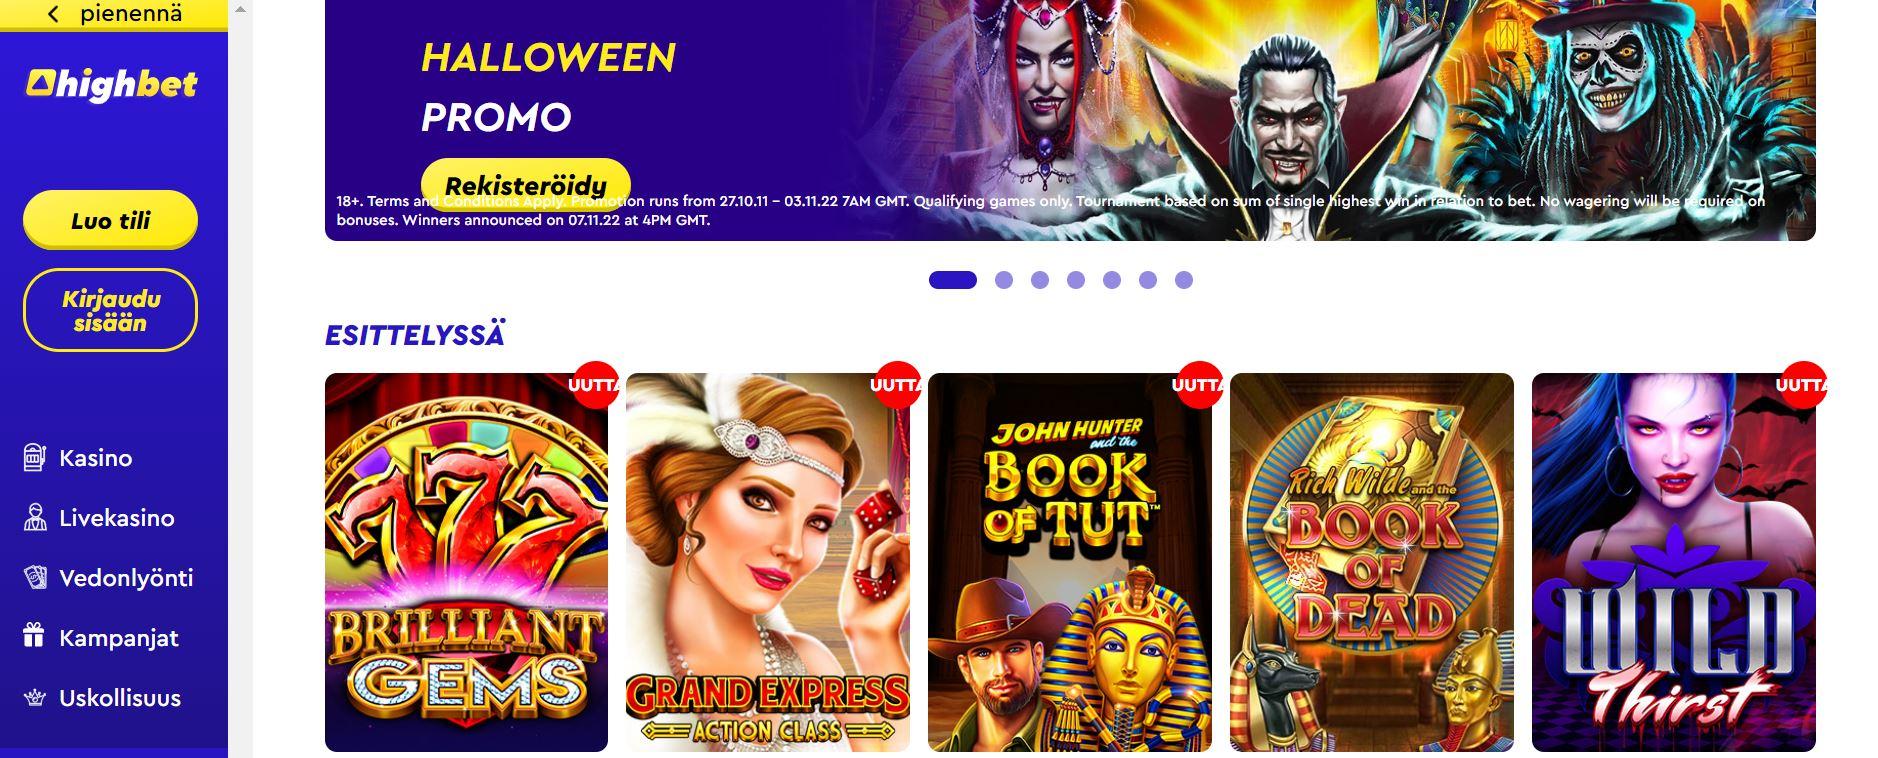 highbet kasino homepage